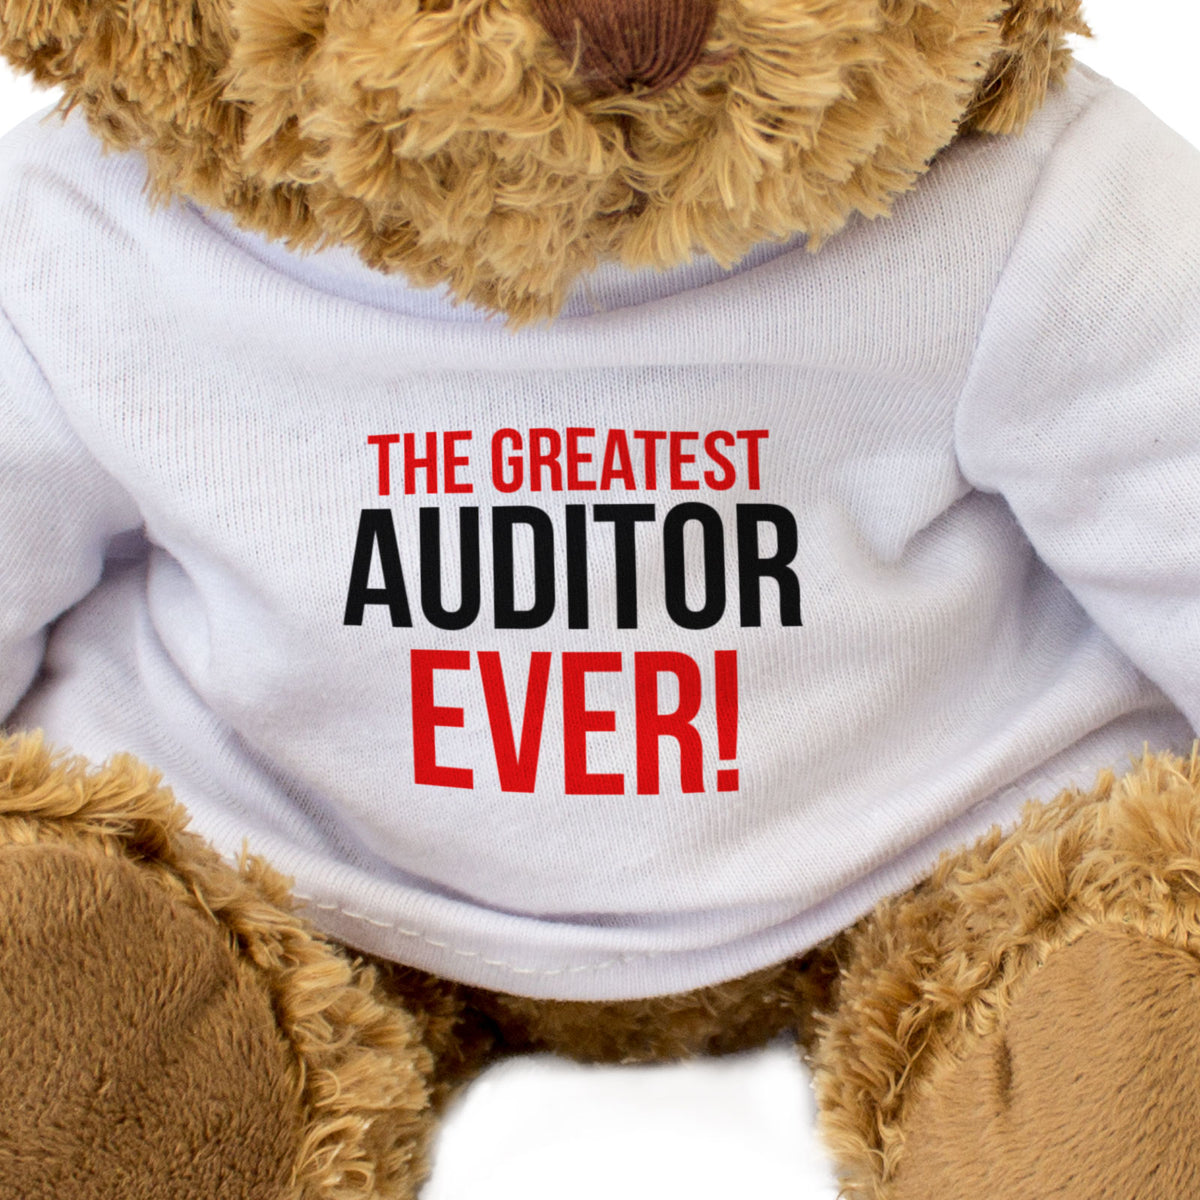 The Greatest Auditor Ever - Teddy Bear